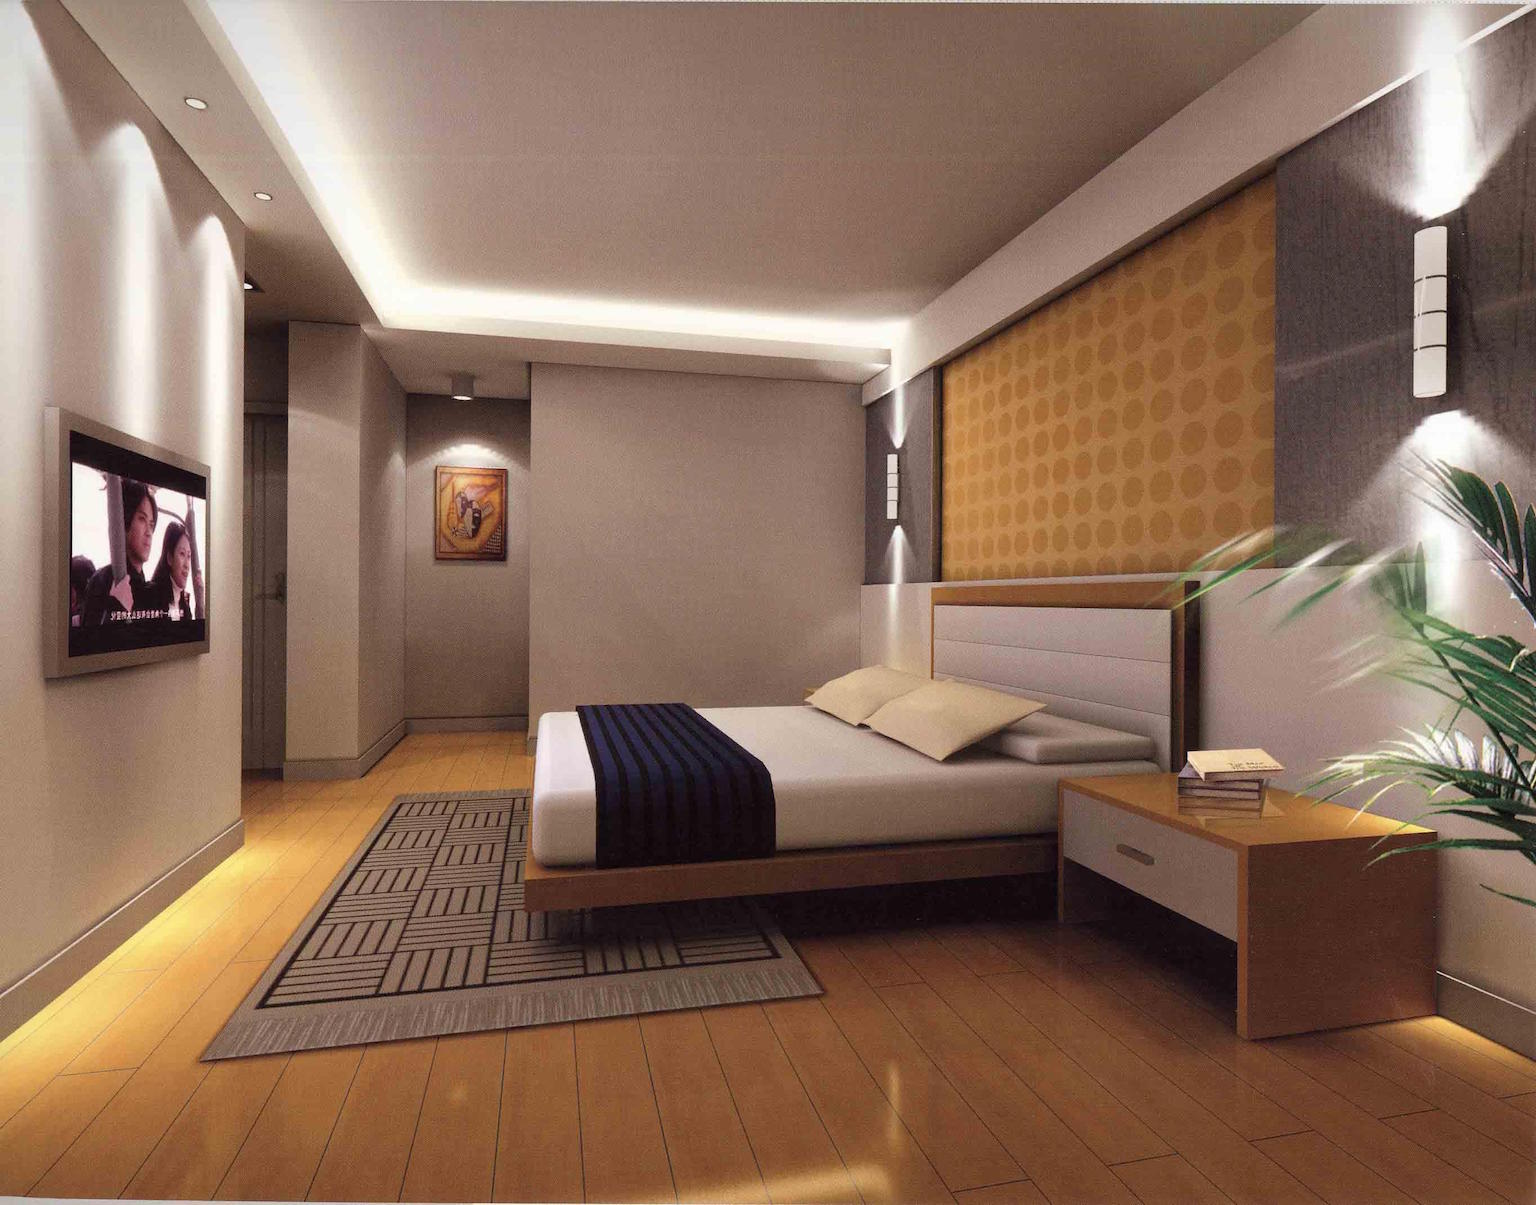 beautiful-interior-design-master-bedroom-ideas-with-new-master-bedrooms-designs-large-master-bedroom-design